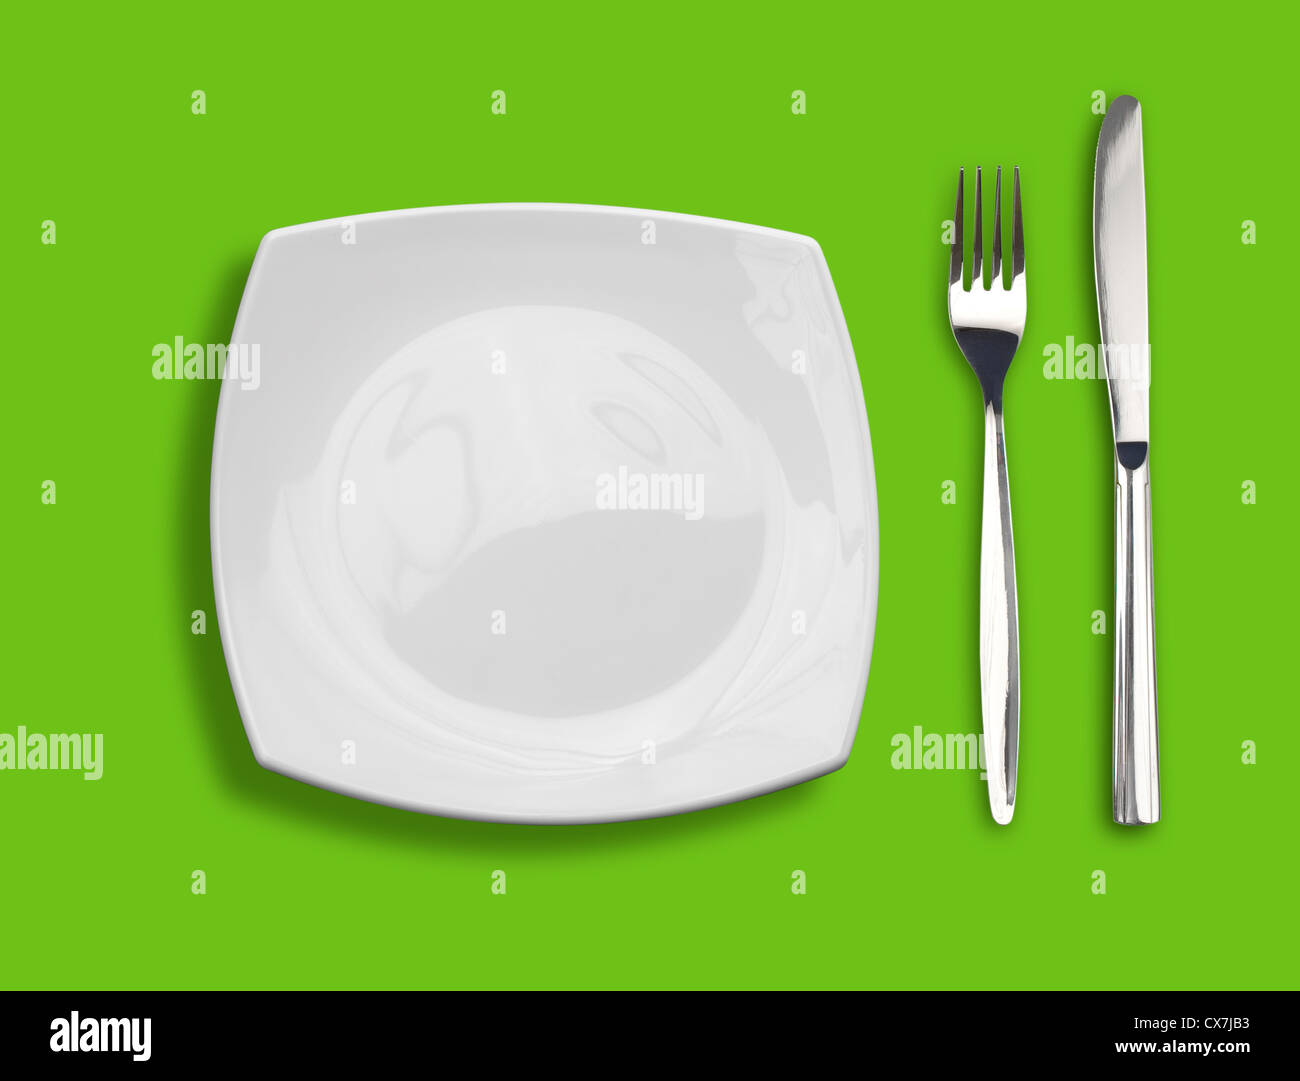 Couteau, fourchette et la plaque carrée blanche sur fond vert Banque D'Images